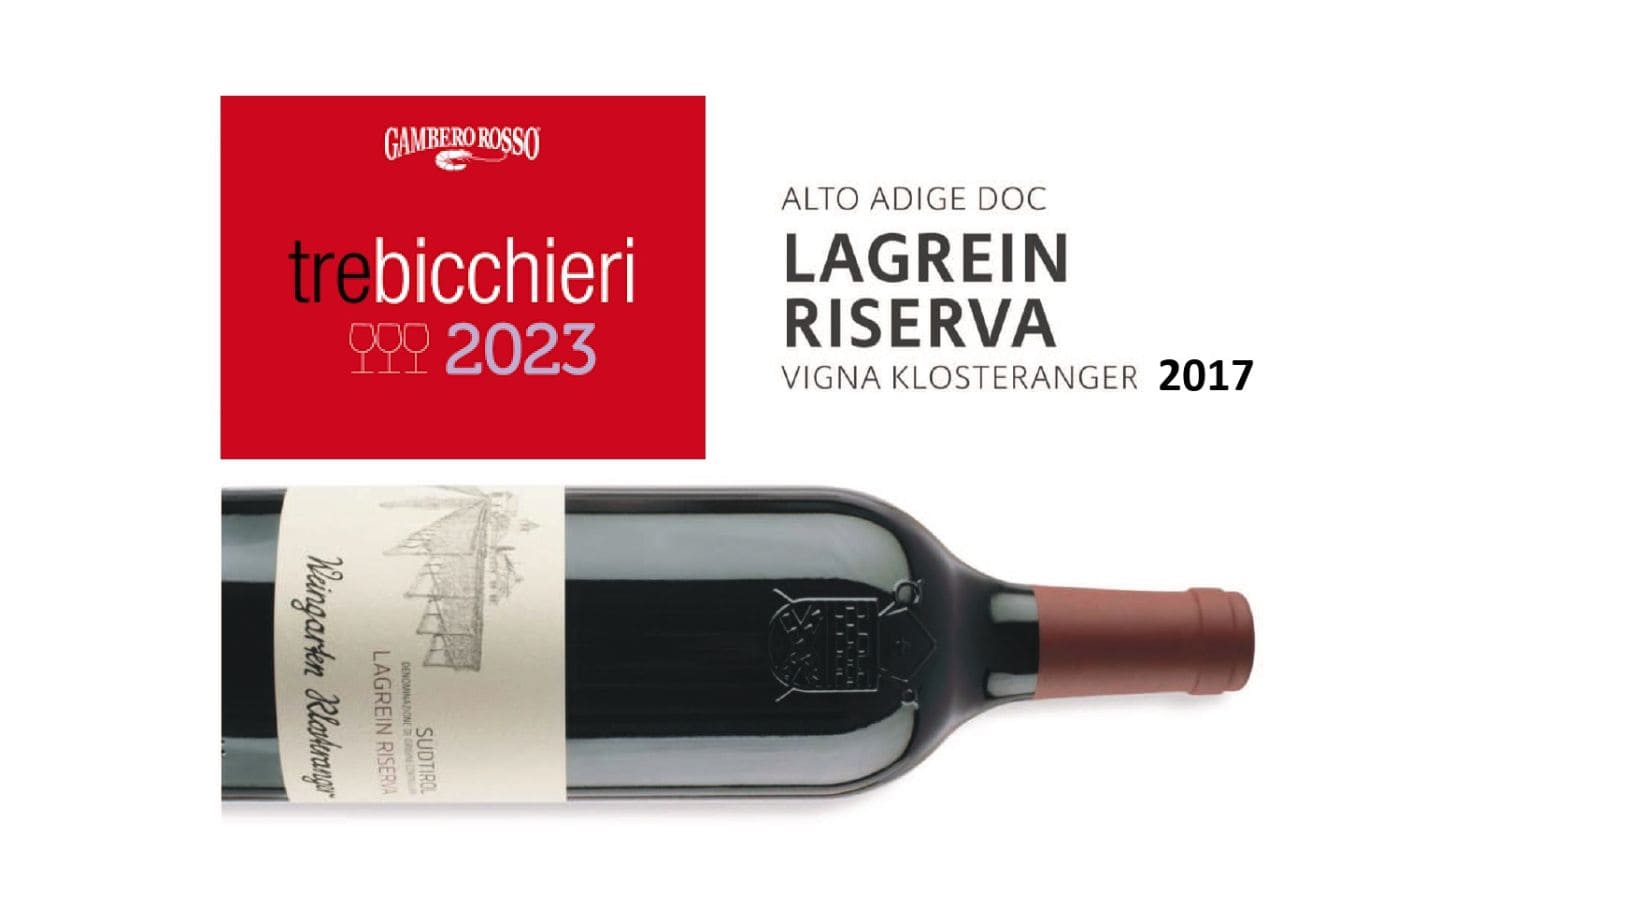 Il Lagrein Riserva vigna Klosteranger 2017 premiato con i “3 Bicchieri” del Gambero Rosso.